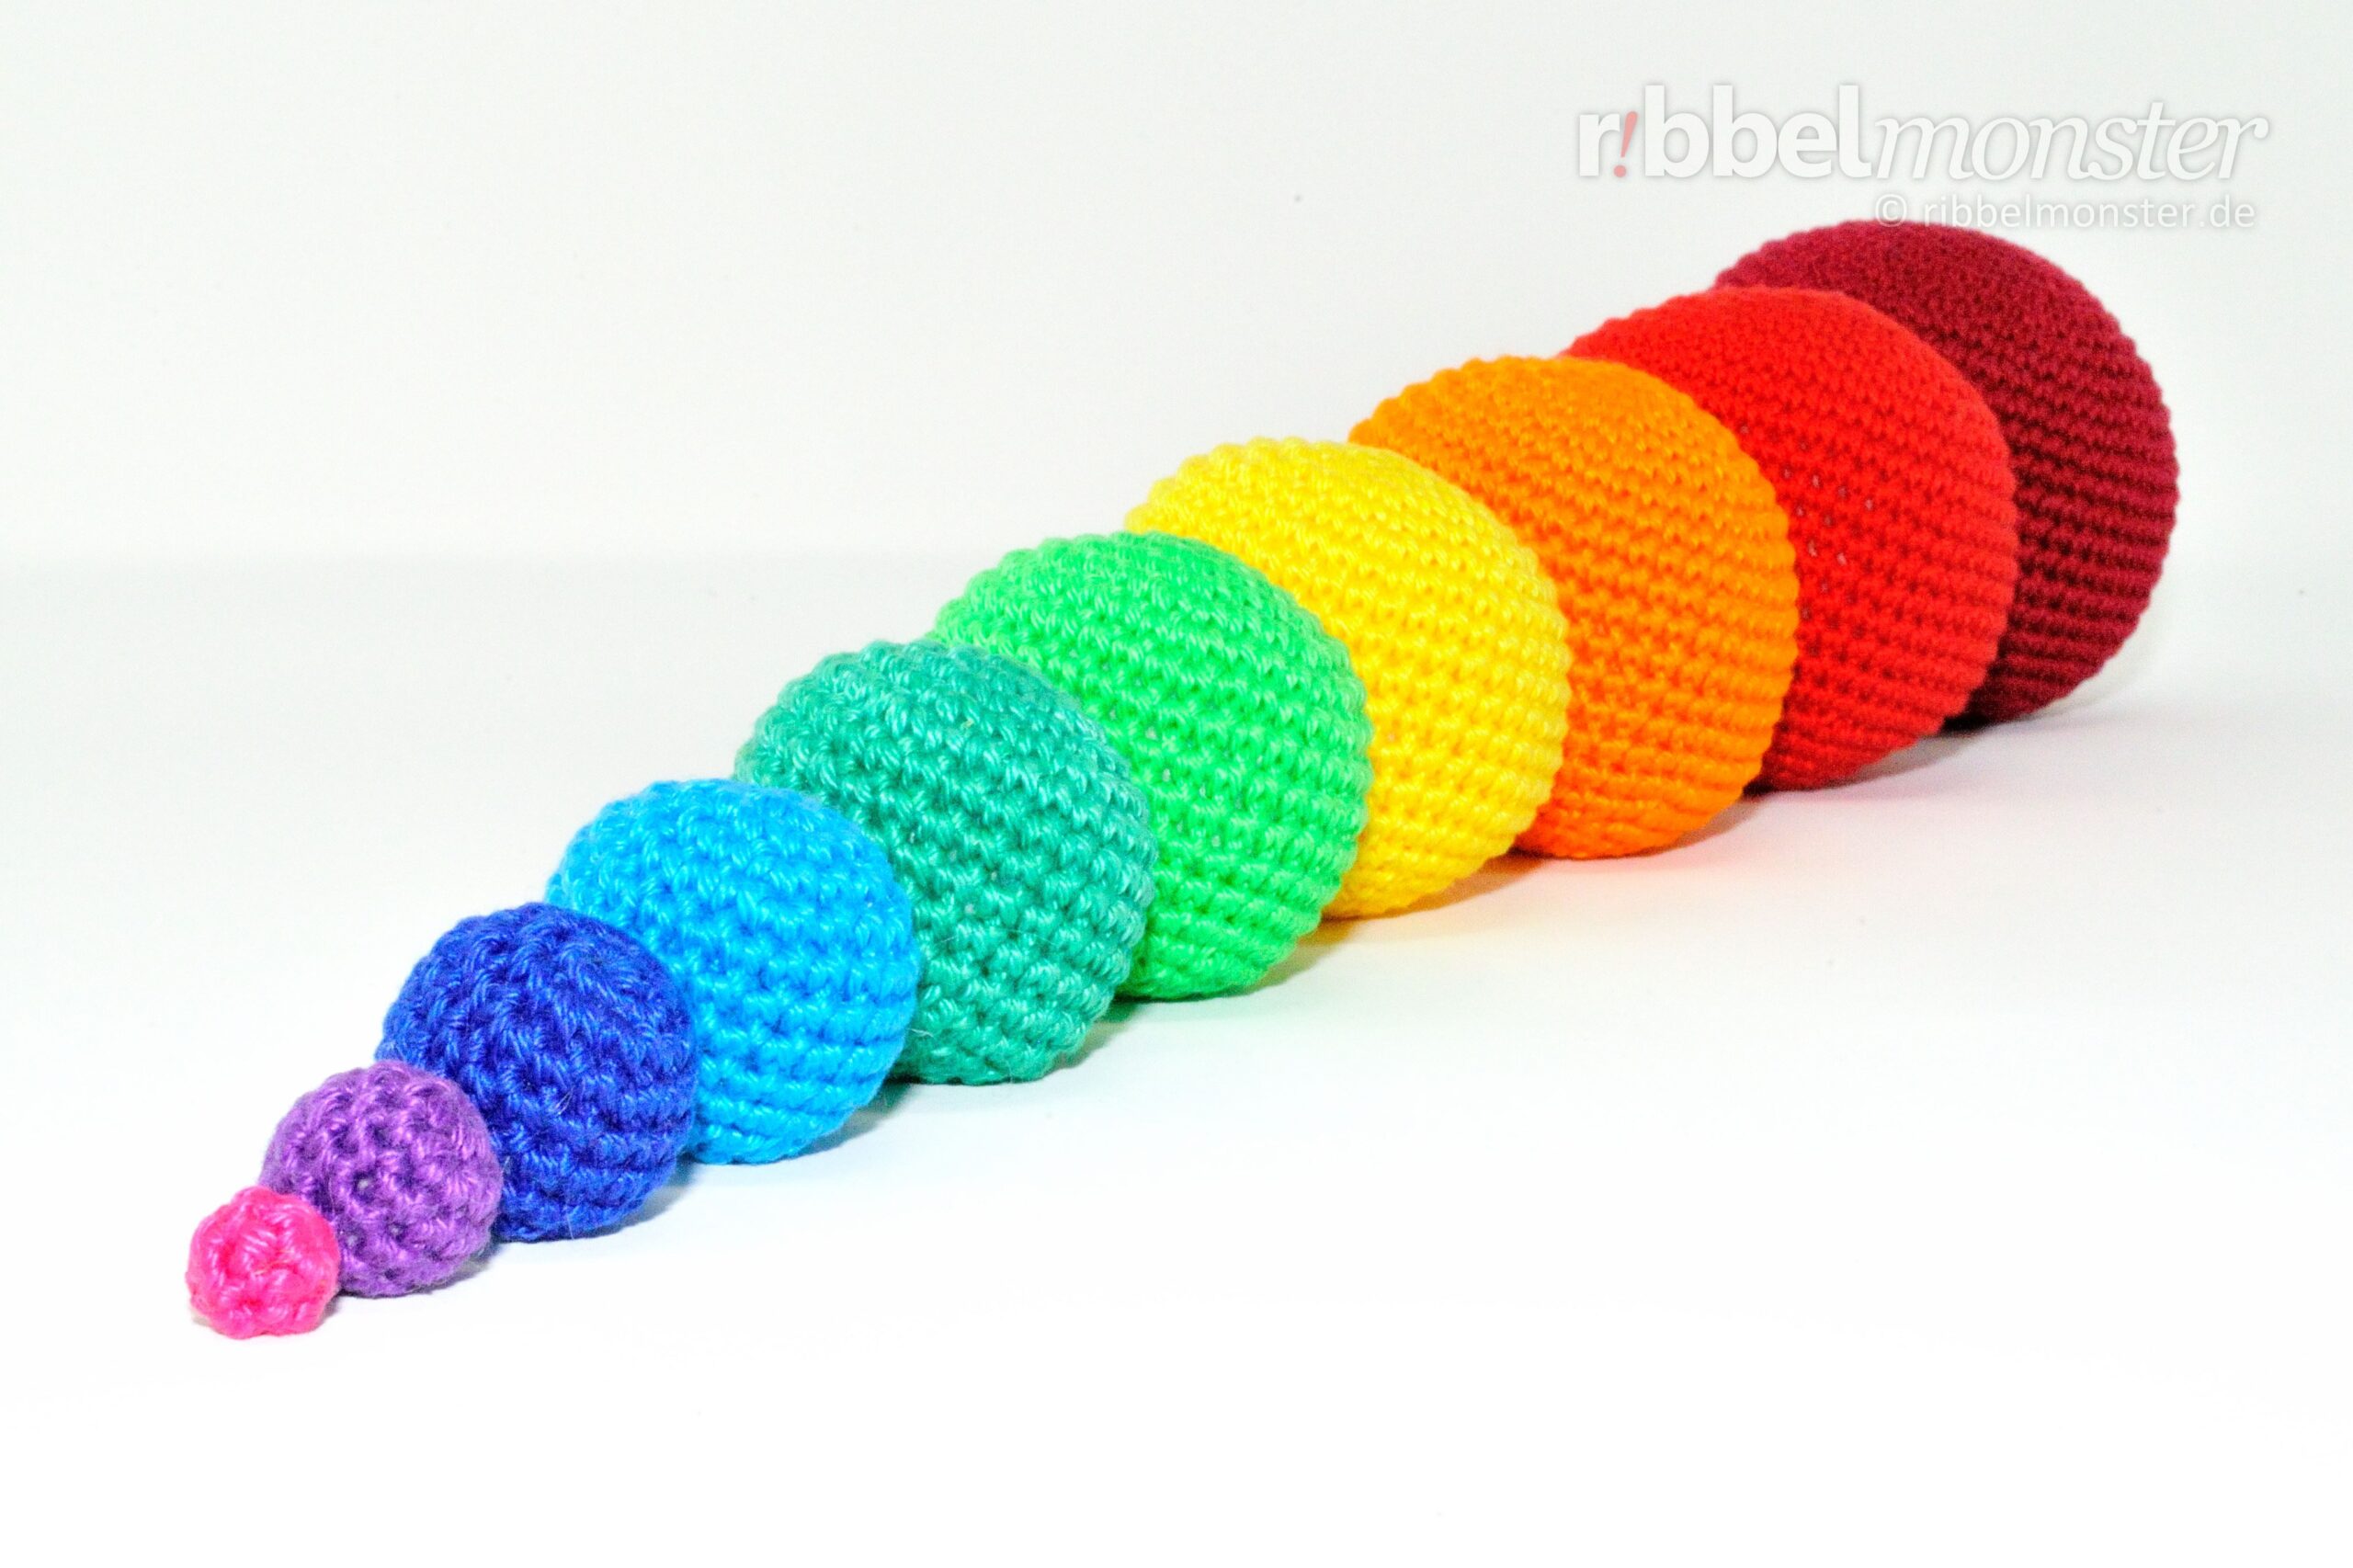 Amigurumi – Crochet Simple Balls